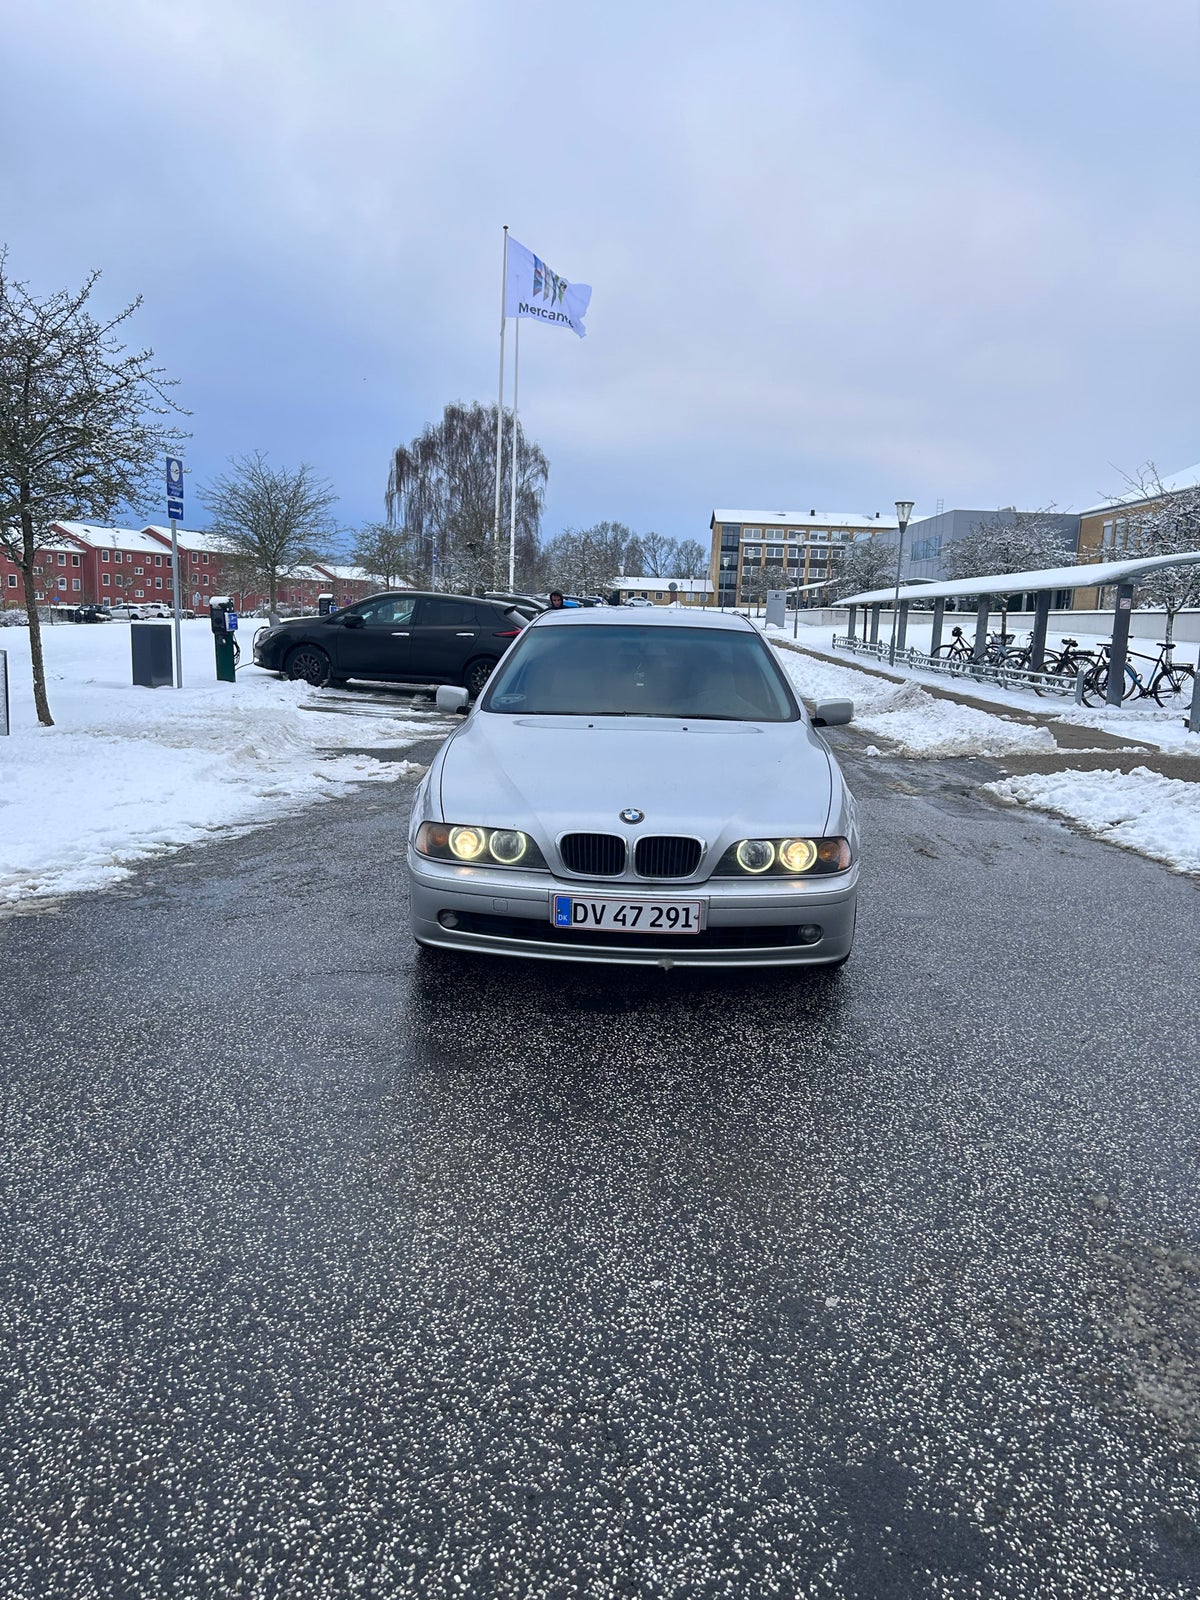 BMW 525i, 2,5 Steptr., Benzin